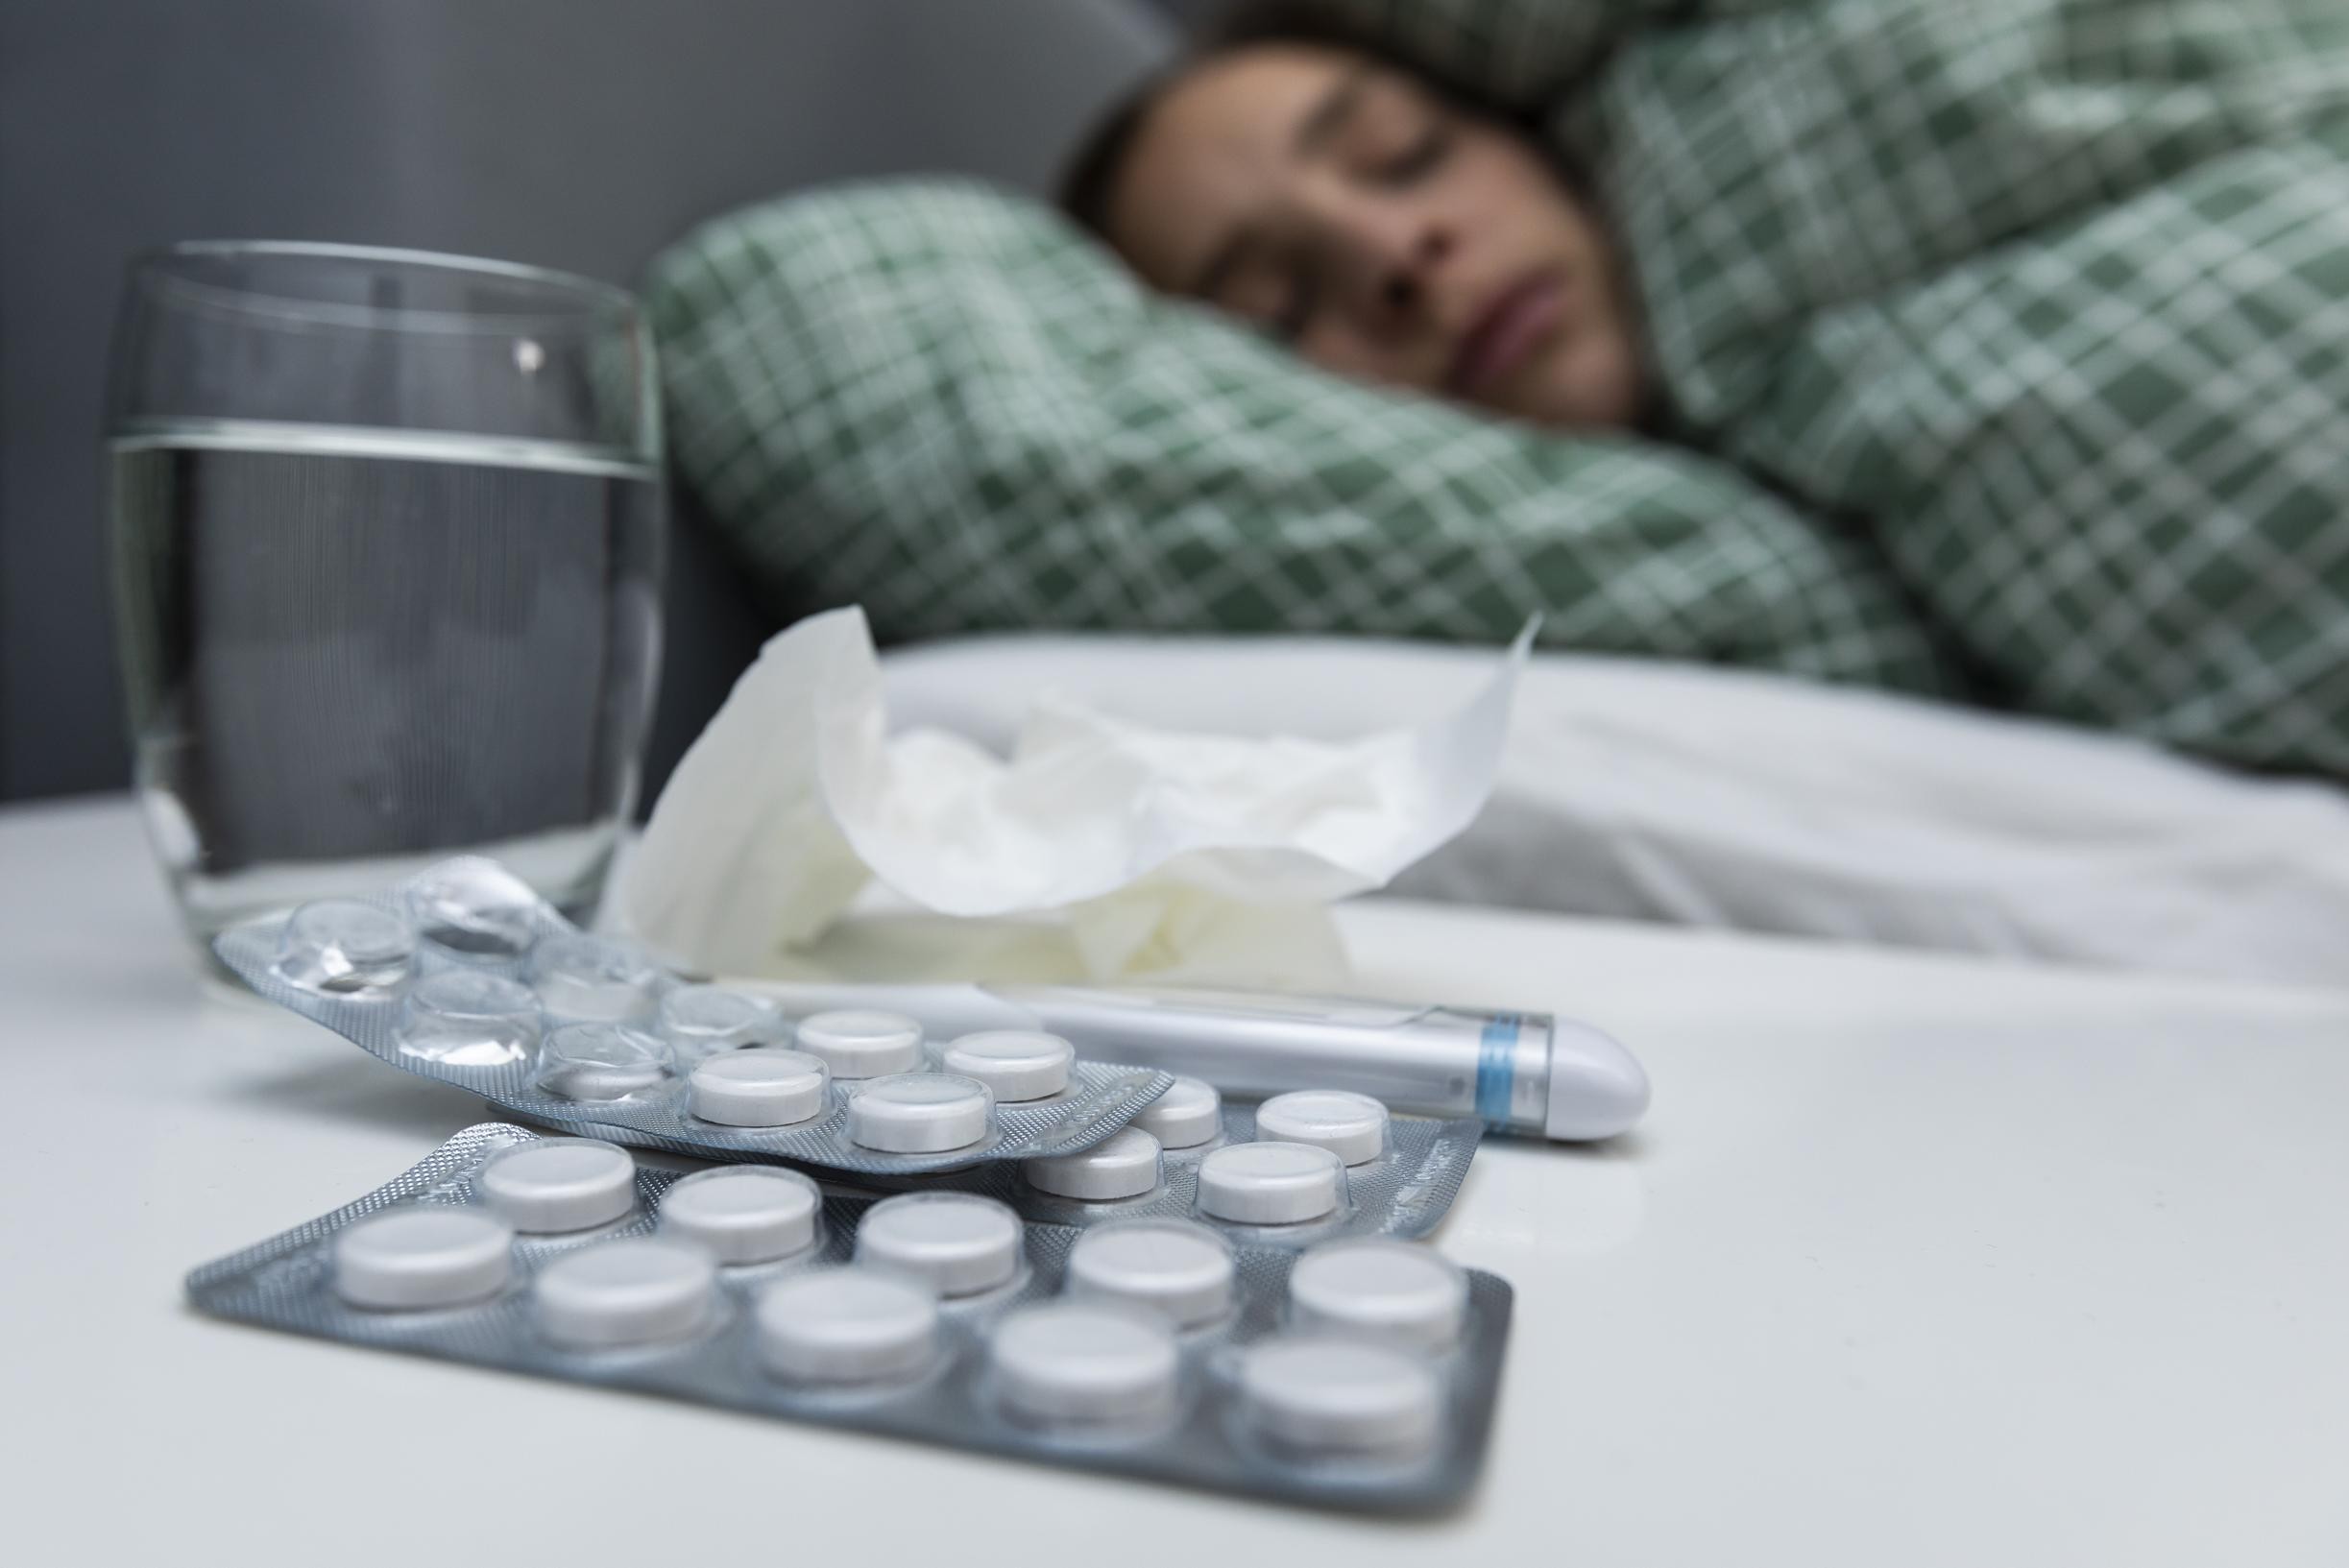 Все больше пациентов с симптомами гриппа обращаются к врачу: «У нас уже есть более крупные случаи, но точно есть эпидемия гриппа»